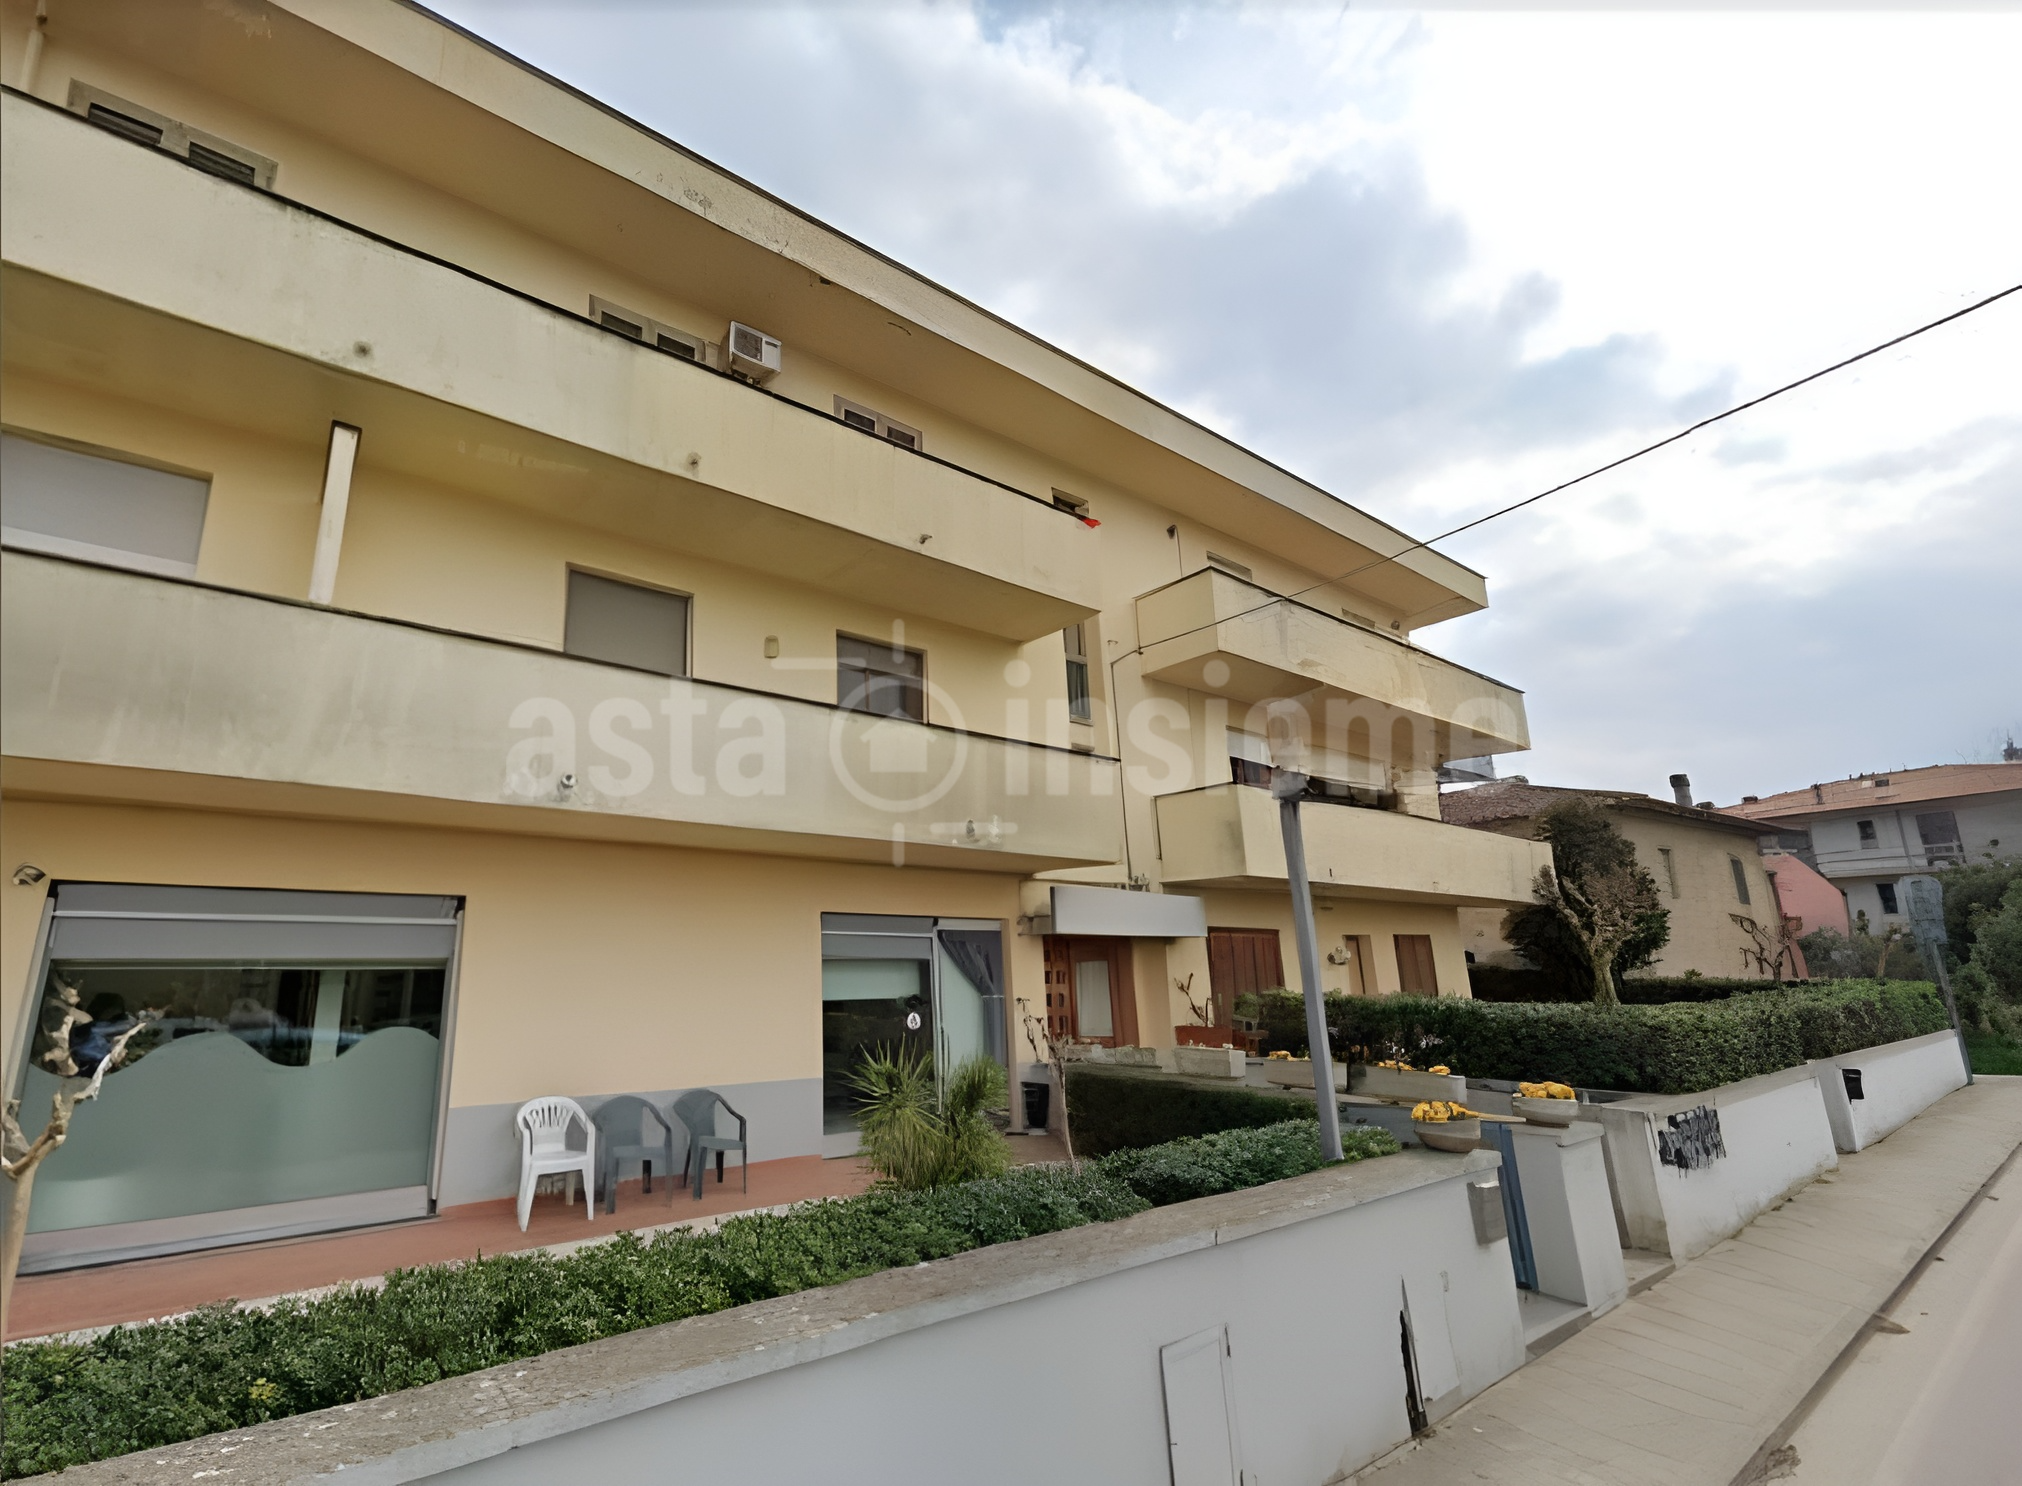 Appartamento Via Nicola Spinelli 59 CASCIANA TERME LARI  di 118,62 Mq. oltre Magazzino